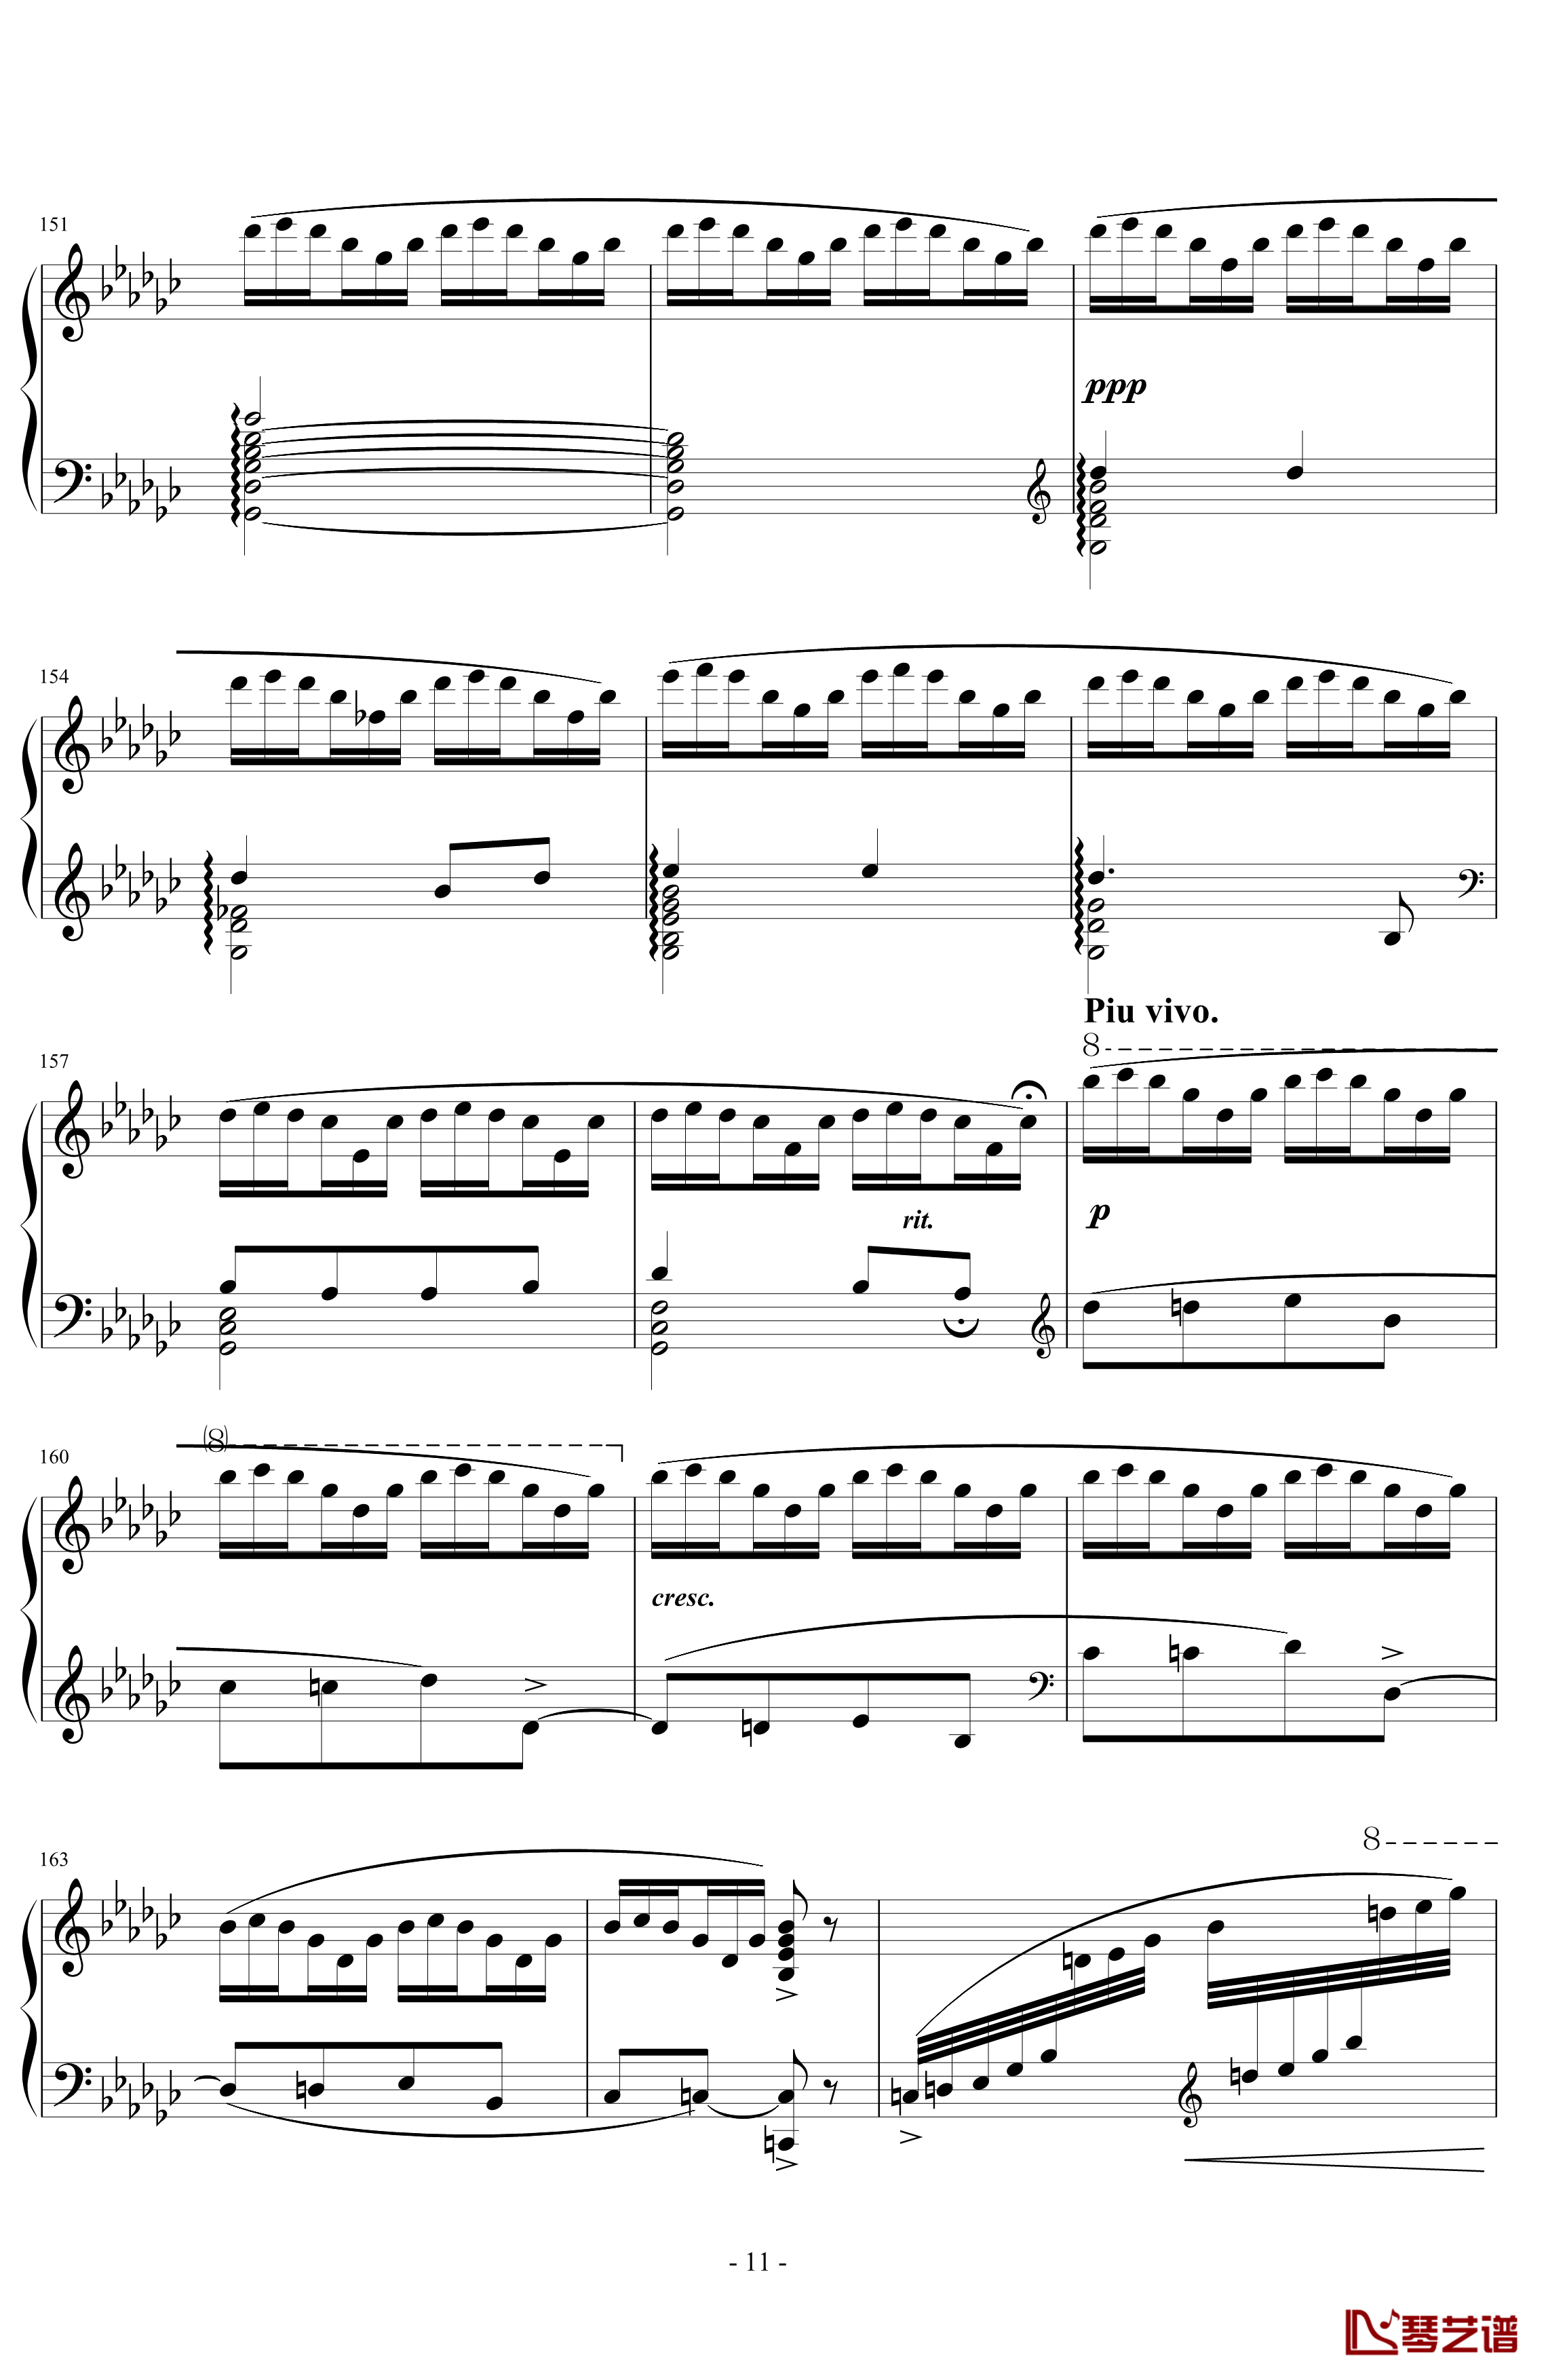 《练习曲Op.25 No.3》钢琴谱-阿连斯基-希望能为大家带来惊喜11